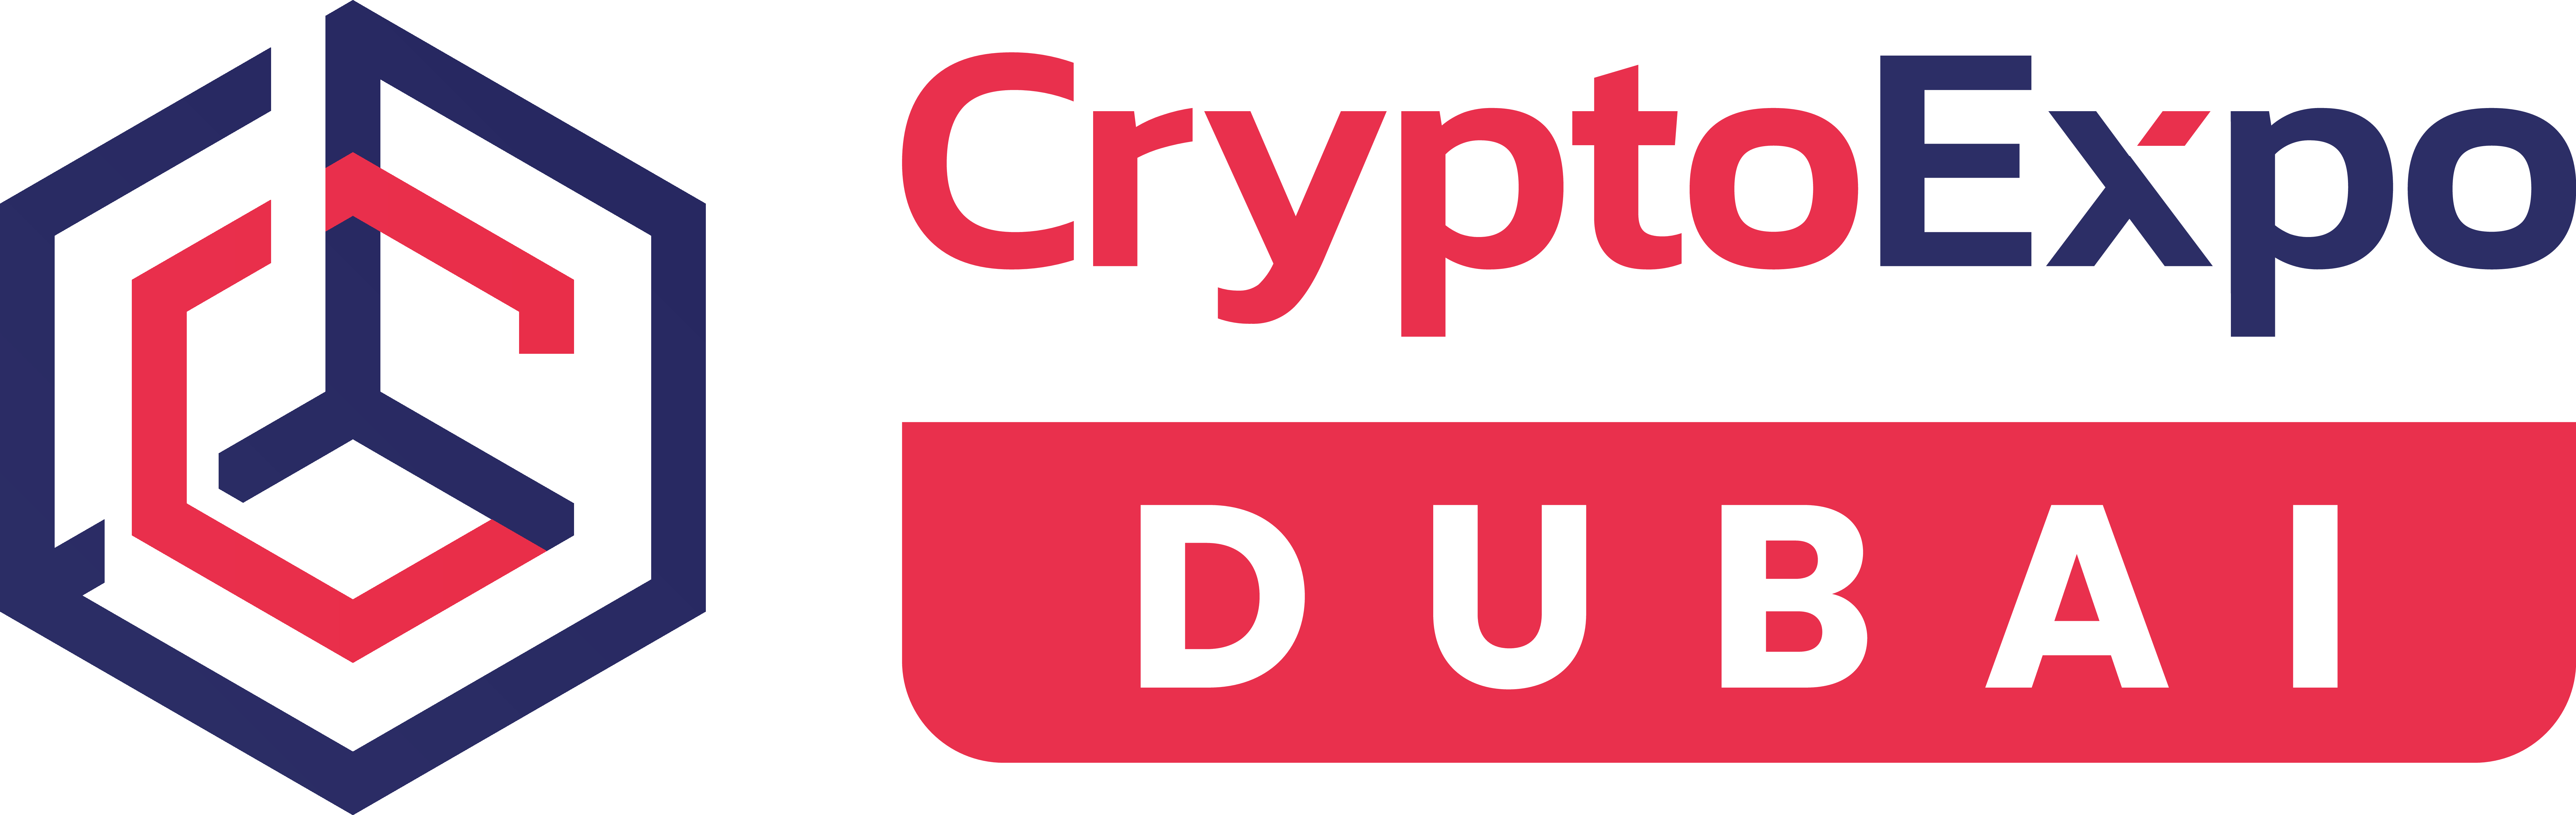 Crypto Expo Dubai